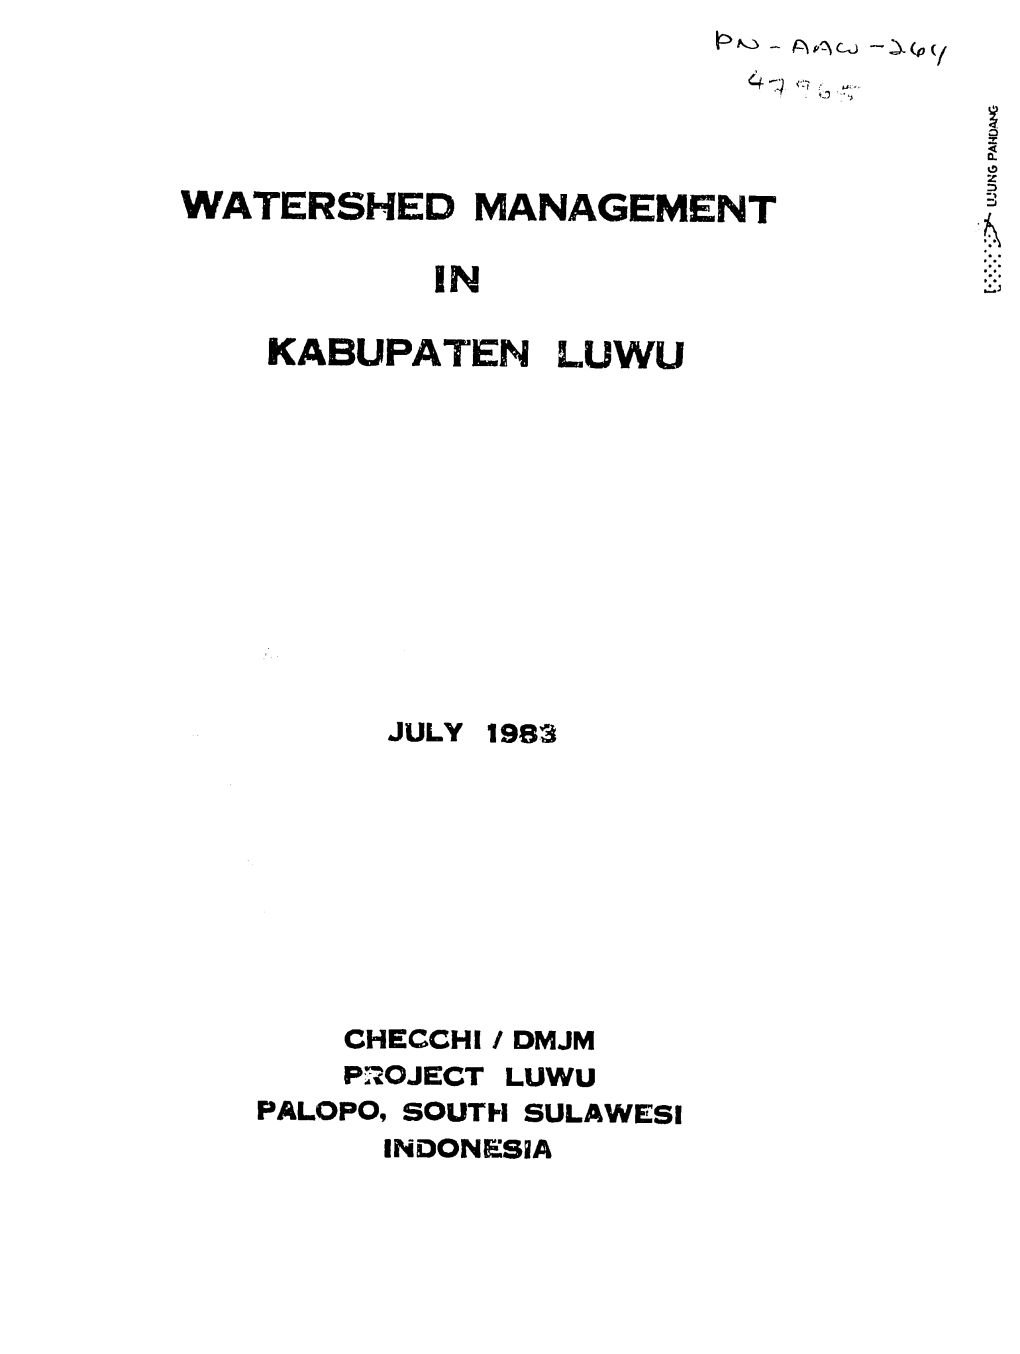 Watershed Management in Kabupaten Luwu